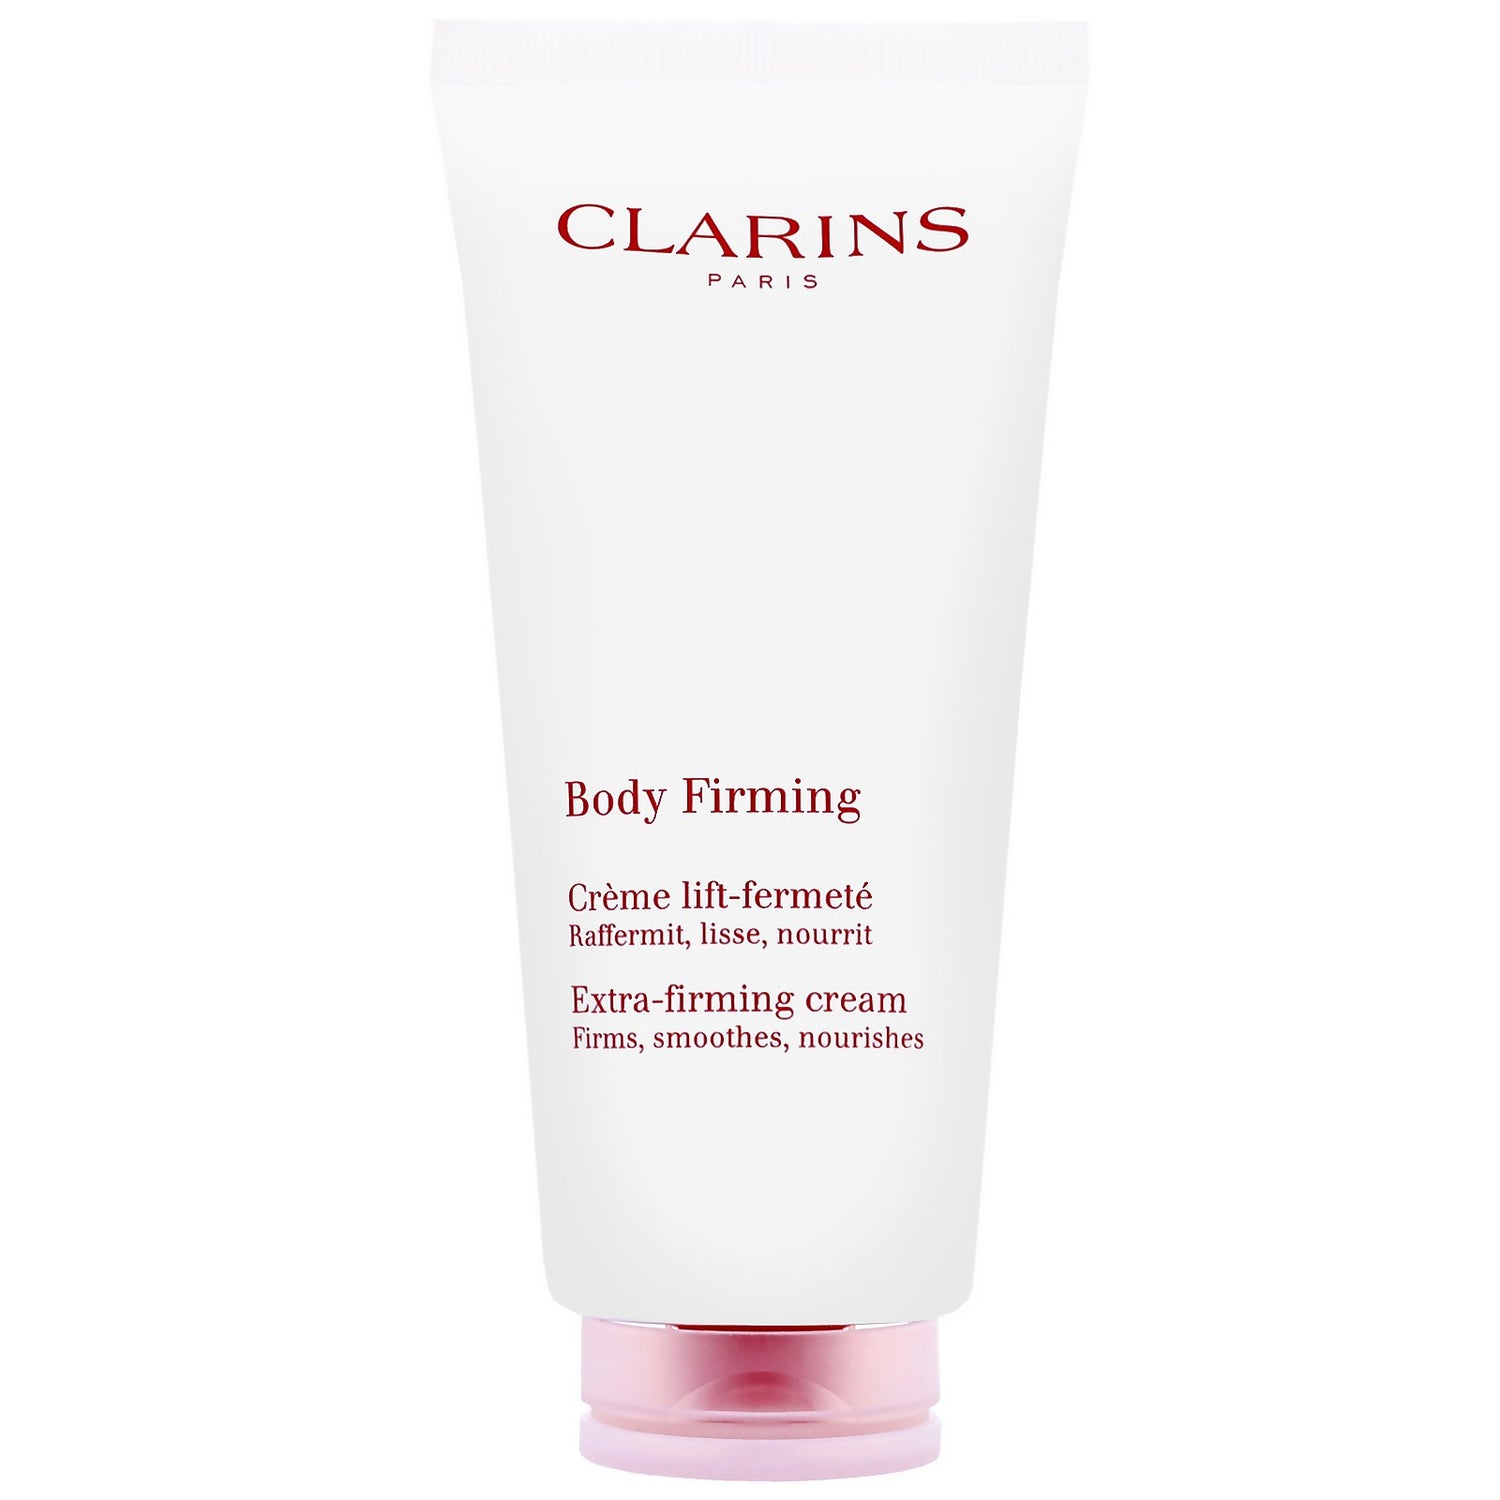 Clarins Firming Treatment Body Firming Cream 200ml / 6.8 oz. - allbeauty